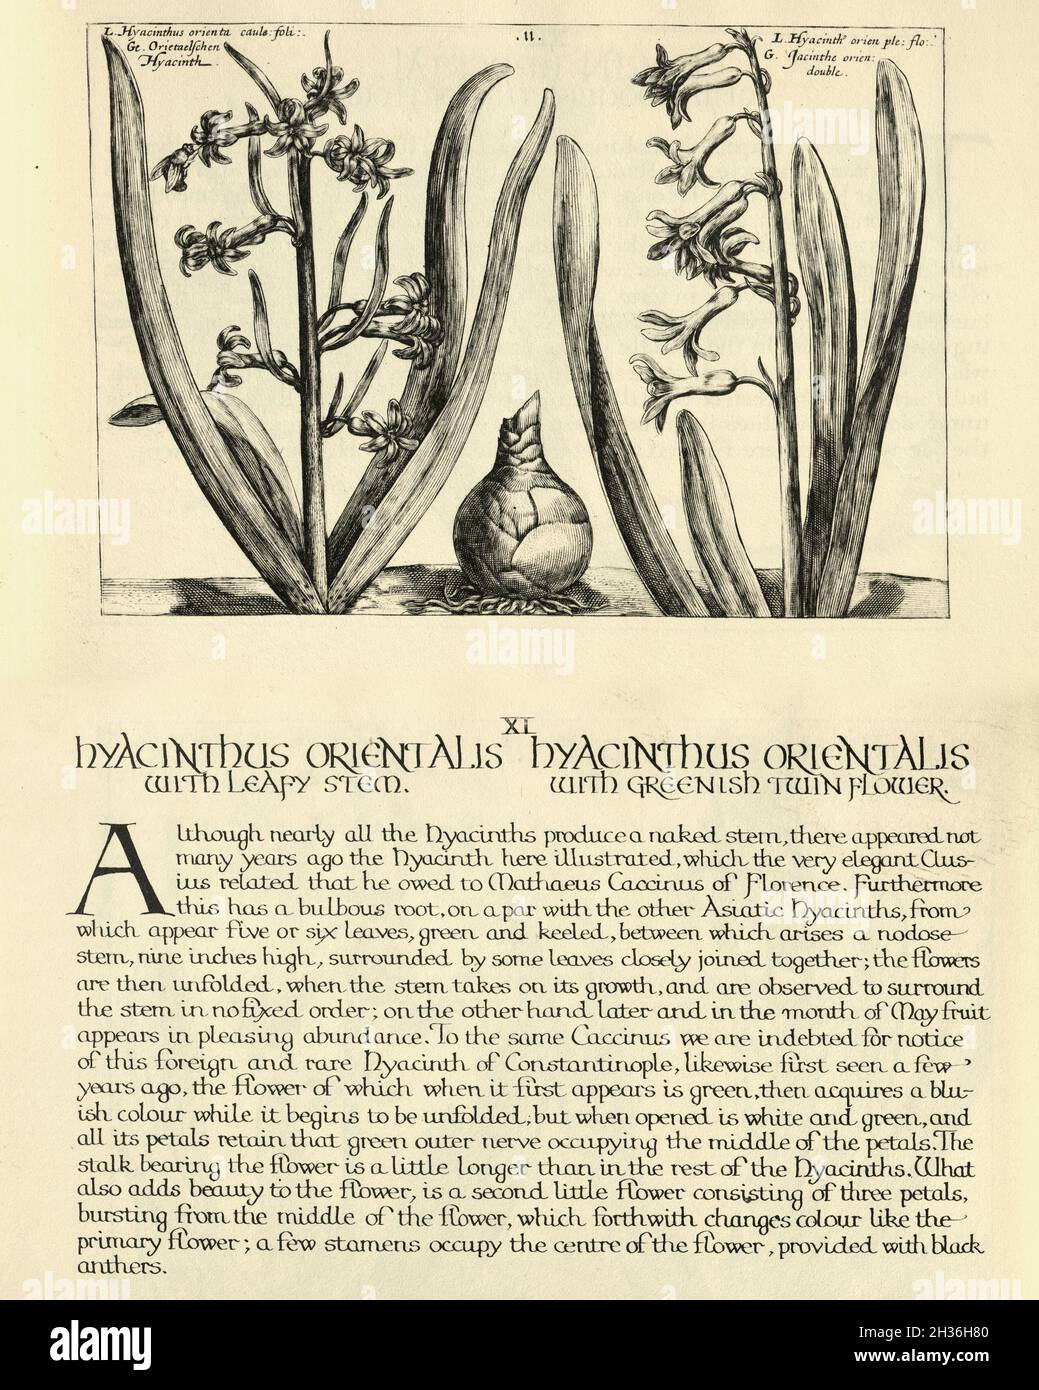 Botanischer Druck von Hyacinthus orientalis, Ommon hyazinth, aus Hortus Floridus von Crispin de Passe, Vintage Illustration Stockfoto